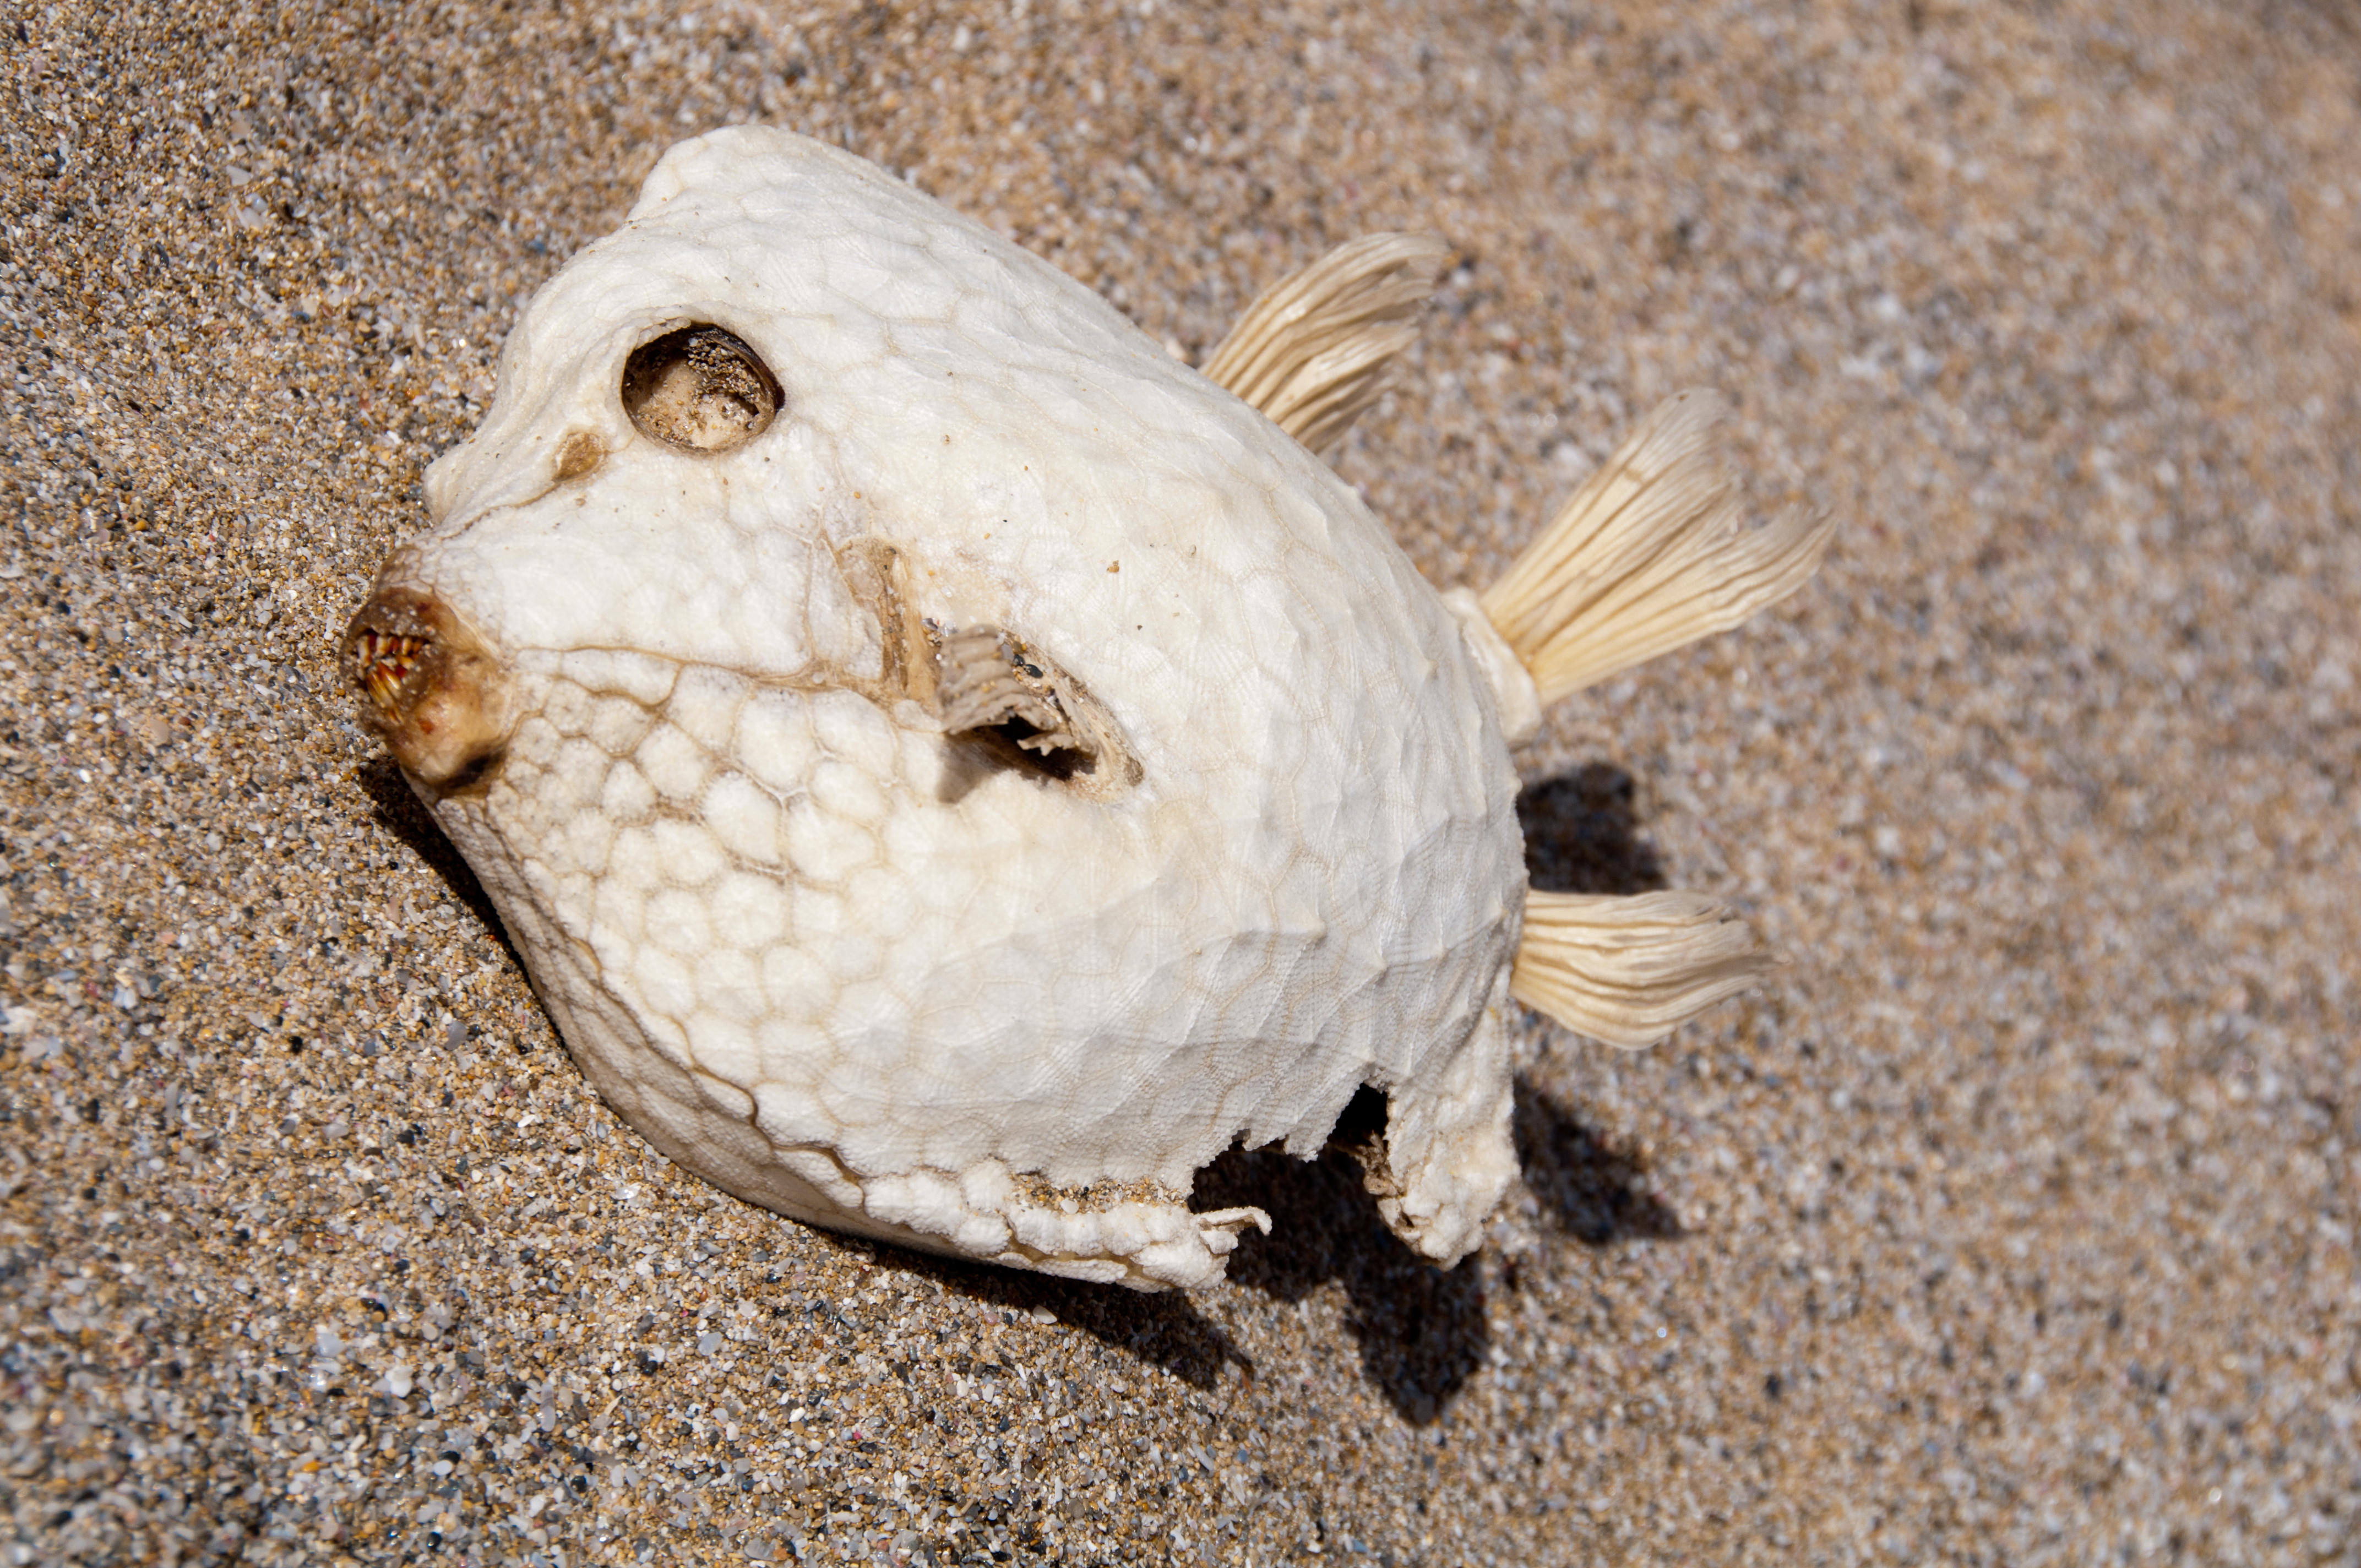 Image of High-backed boxfish